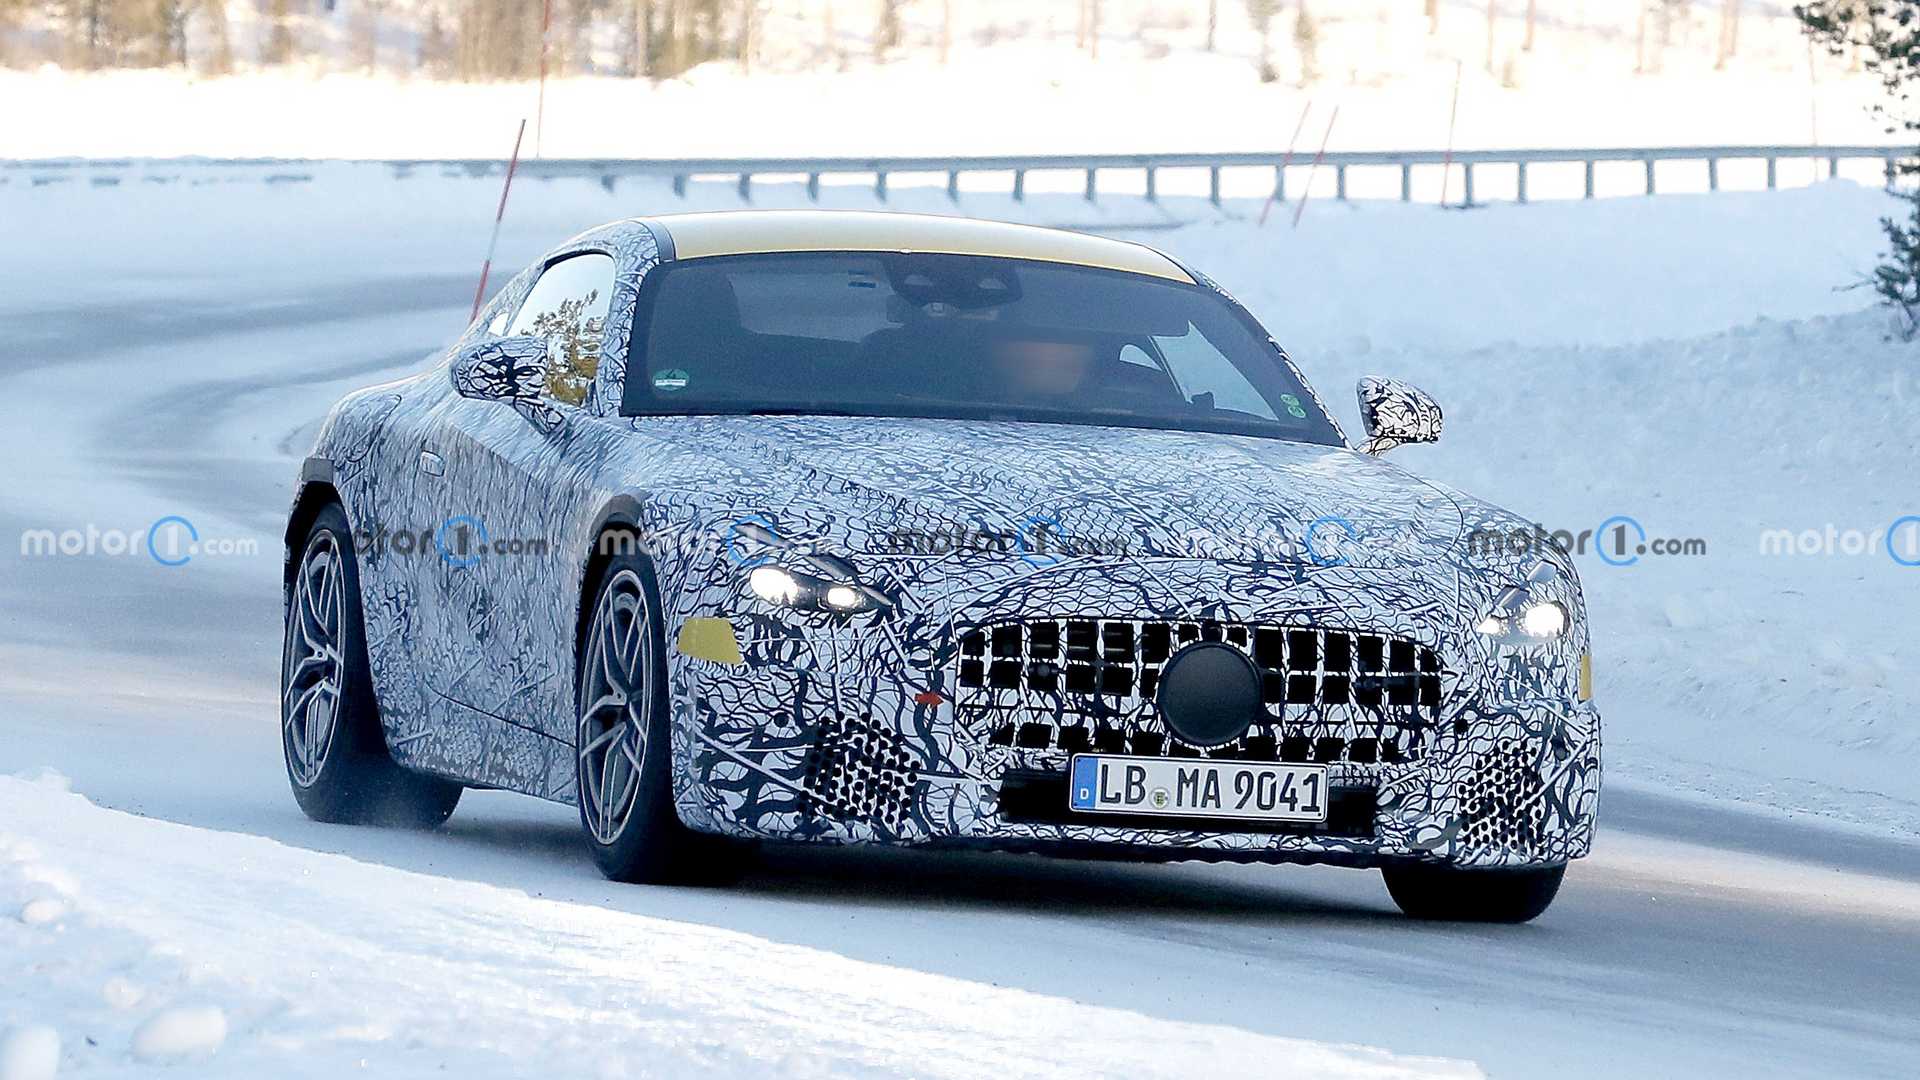 Mercedes-AMG GT thử nghiệm xuất hiện vào hồi tháng 01/2022